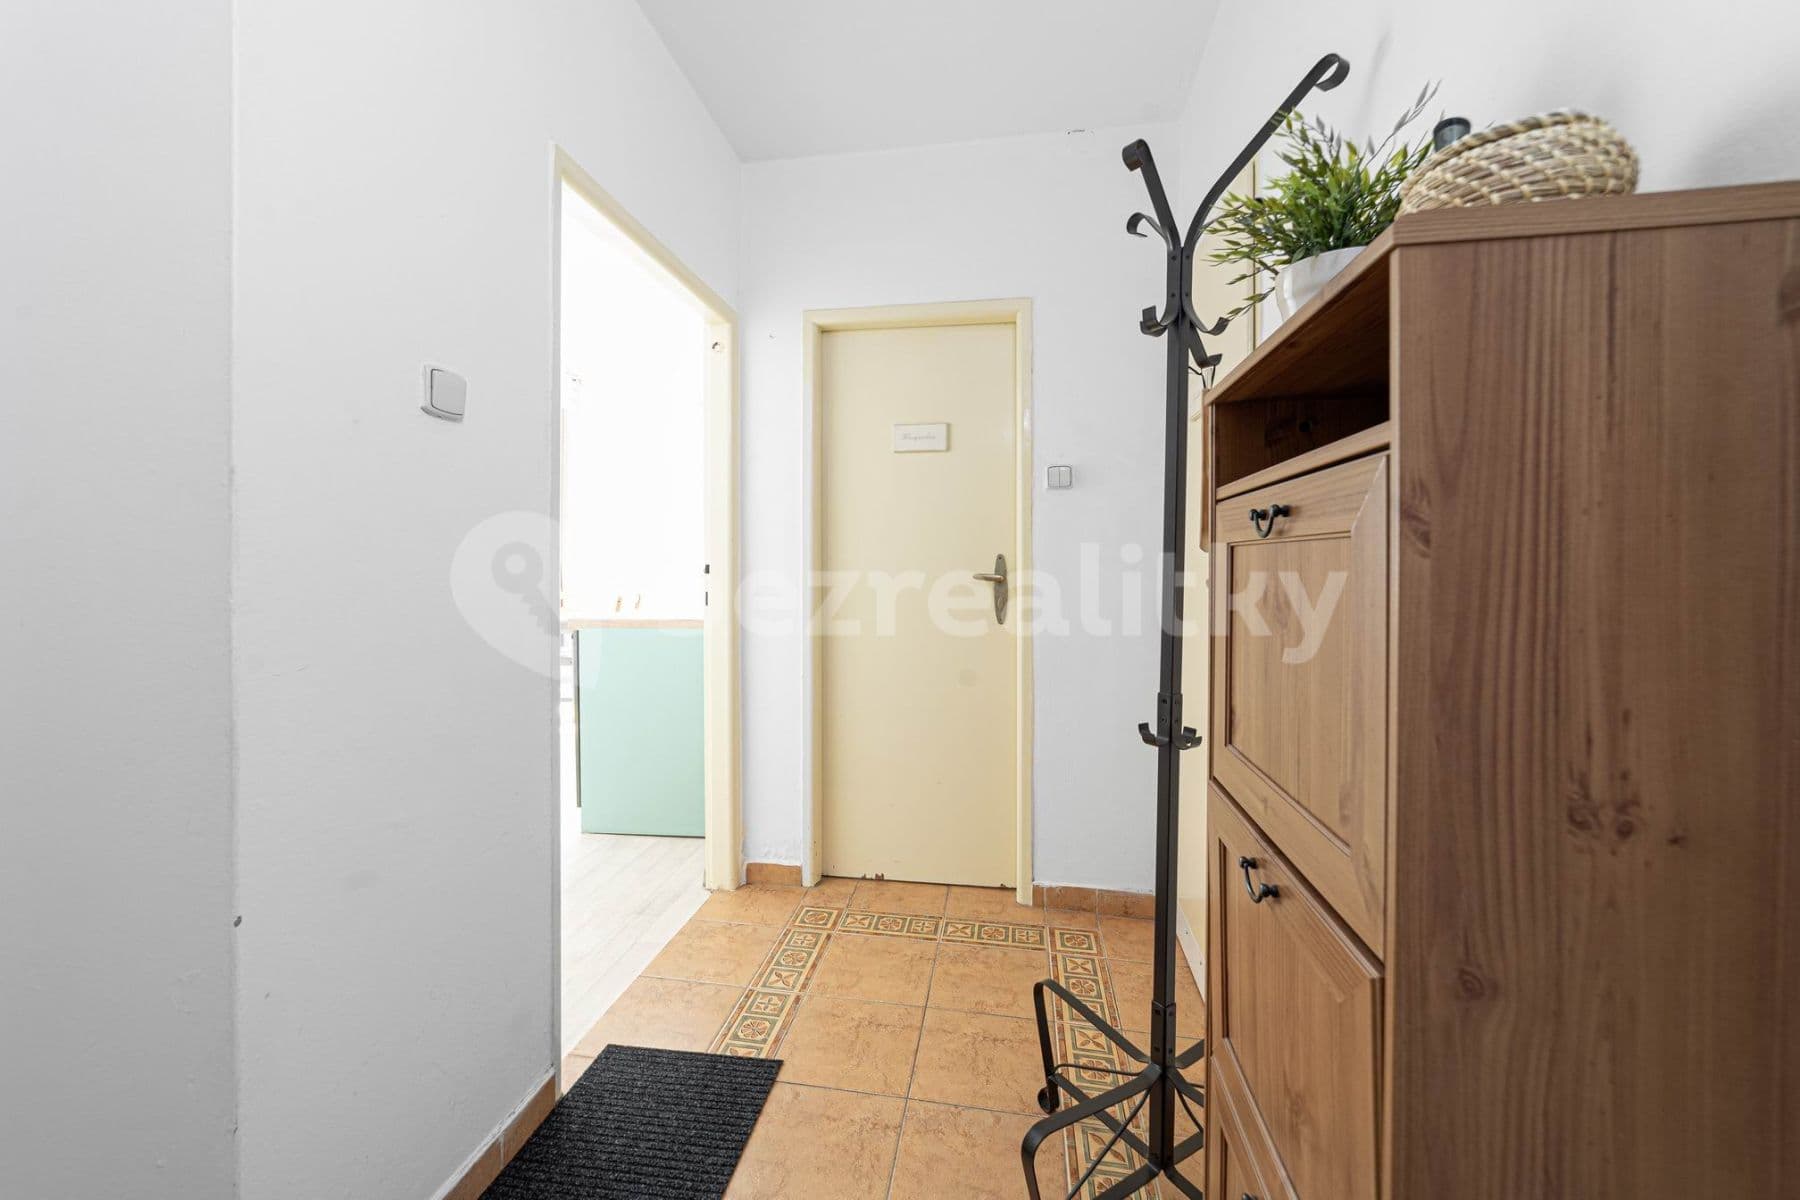 1 bedroom with open-plan kitchen flat for sale, 47 m², Šimkova, Hradec Králové, Královéhradecký Region